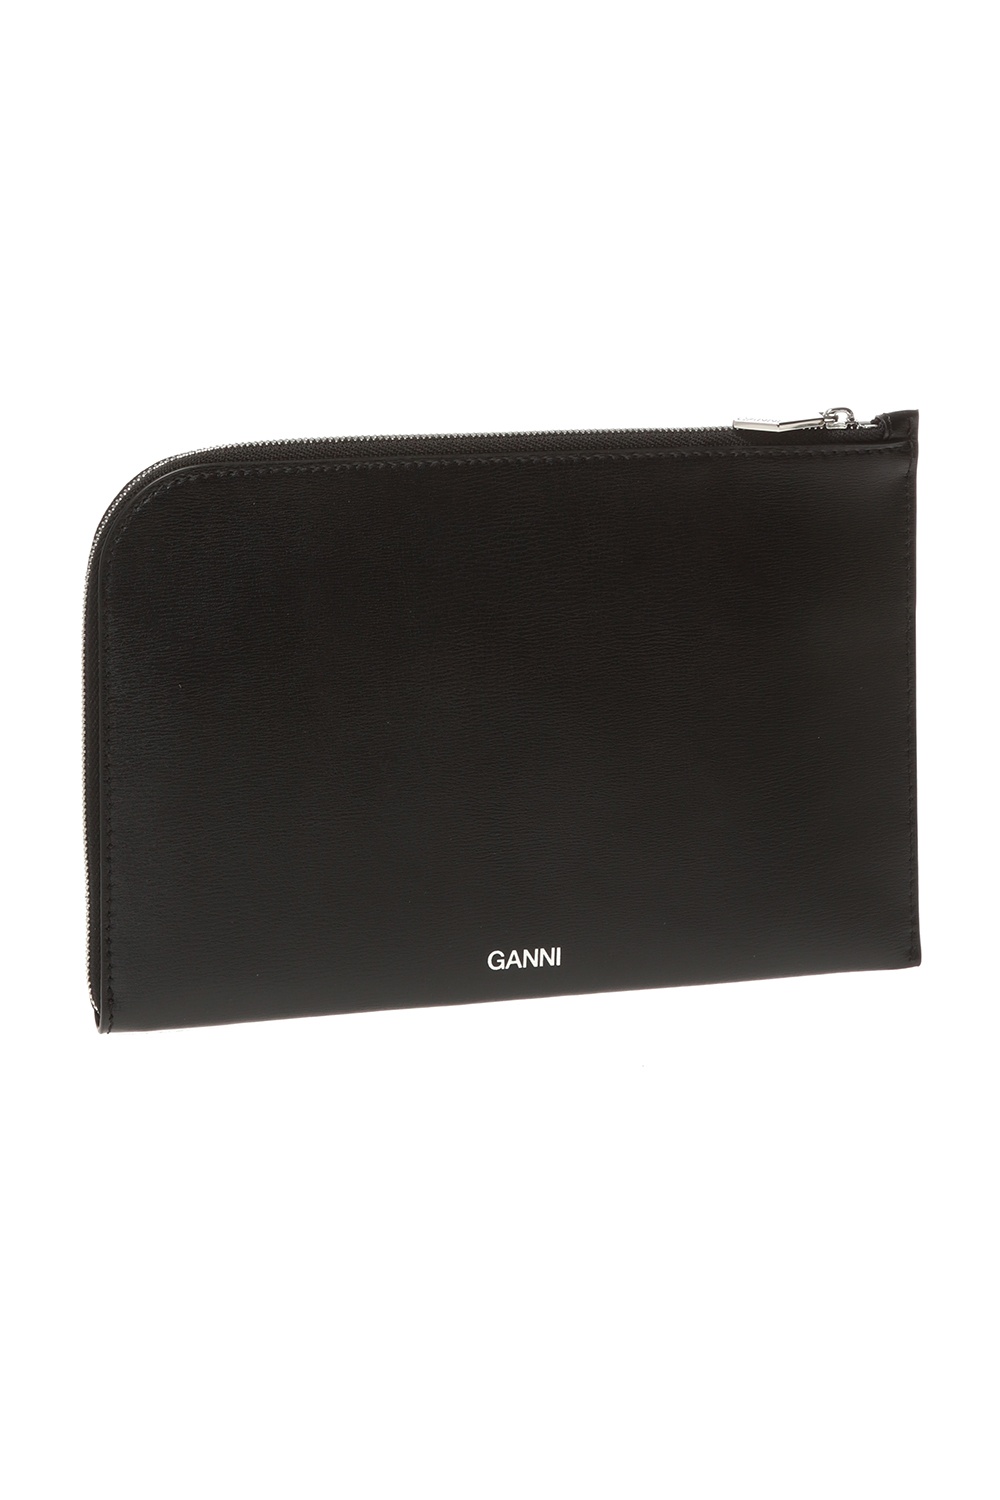 Ganni Leather clutch with logo